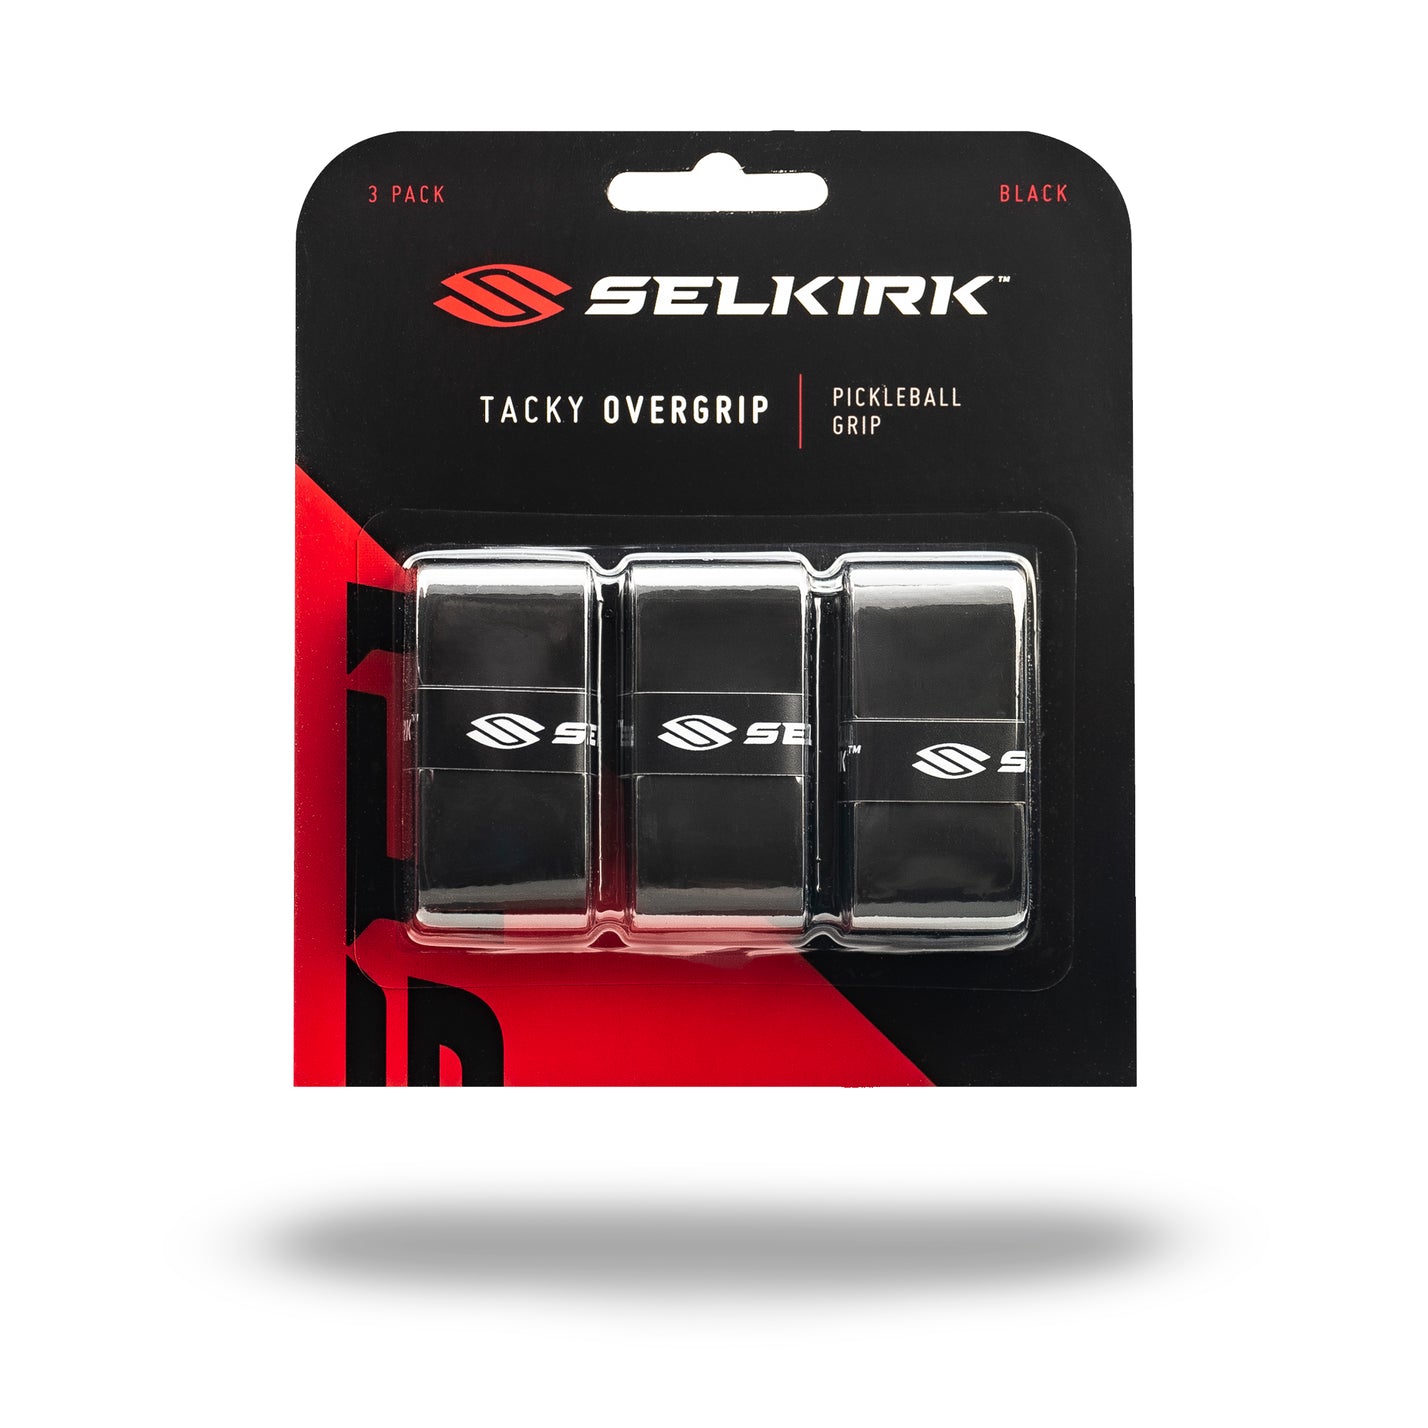 Selkirk 3 Pack Tacky Overgrips Accessories Selkirk Black  